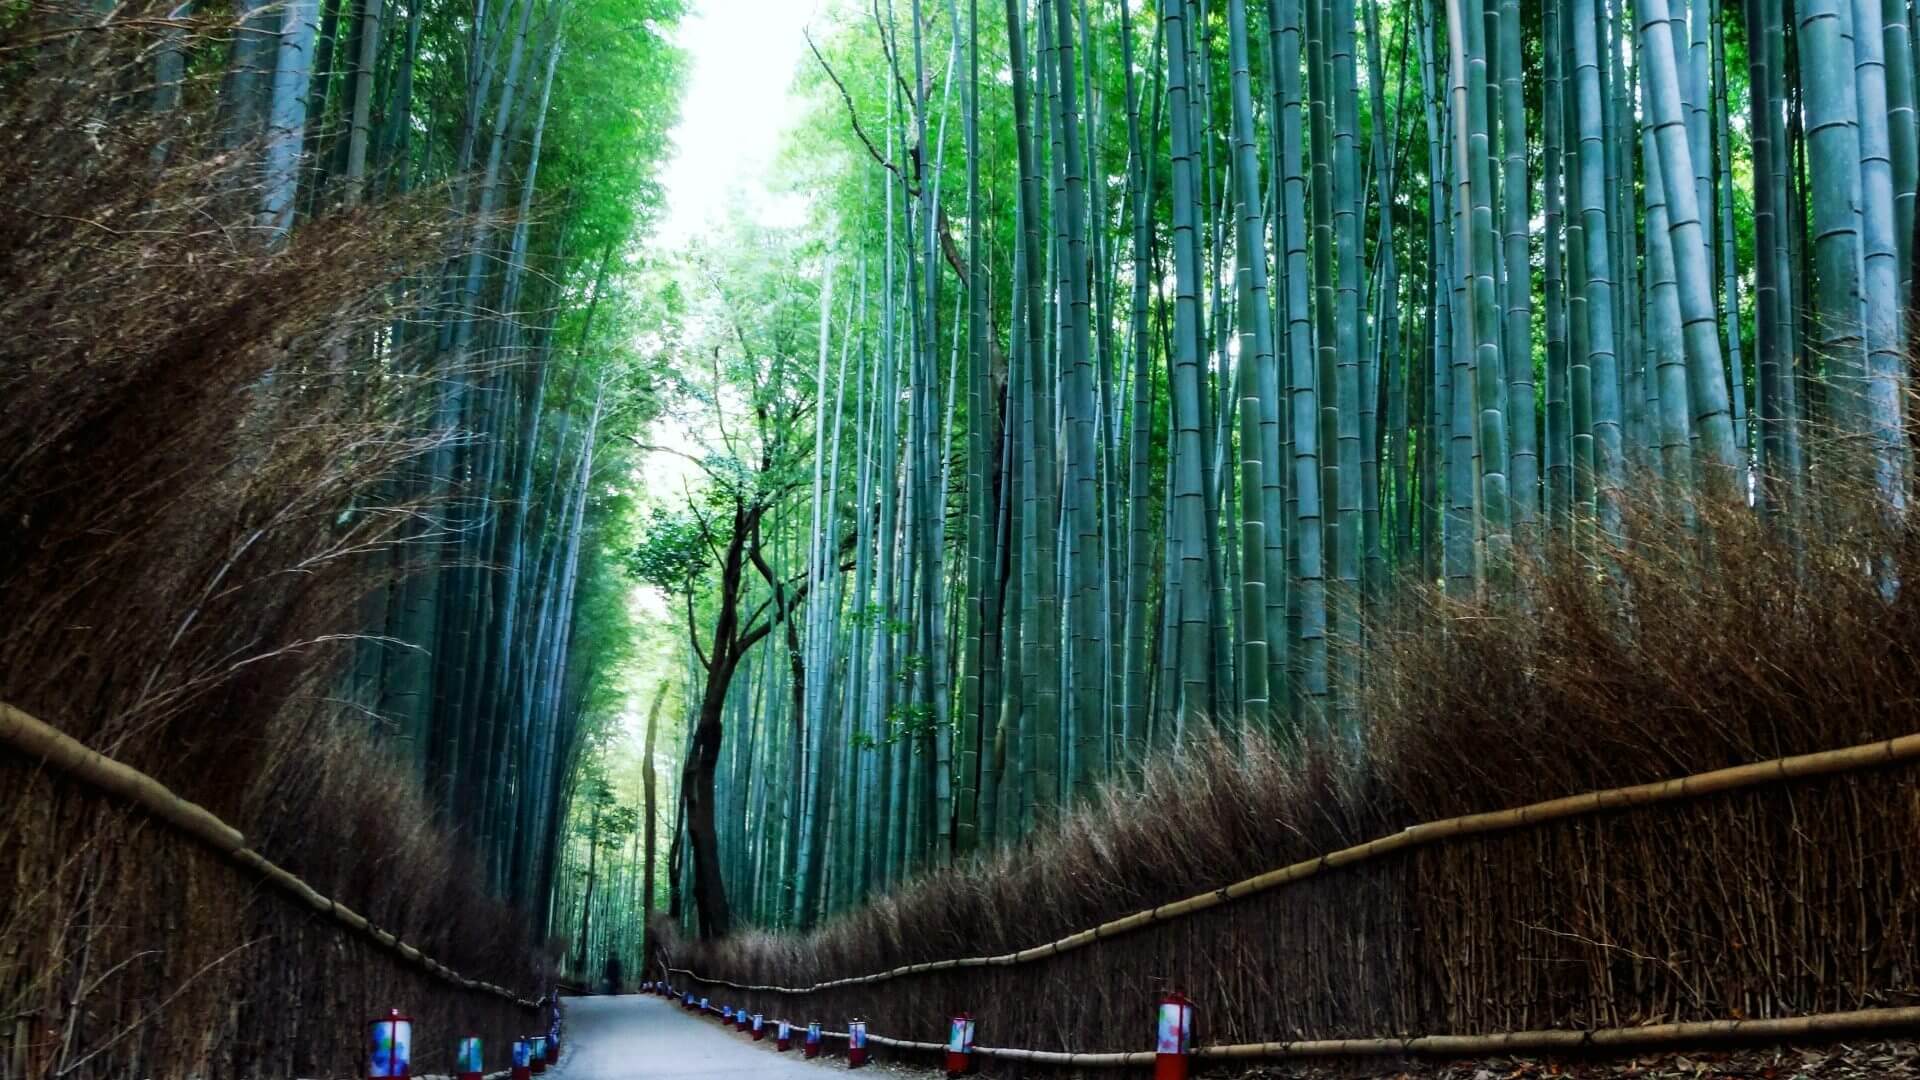 Arashiyama Kyoto